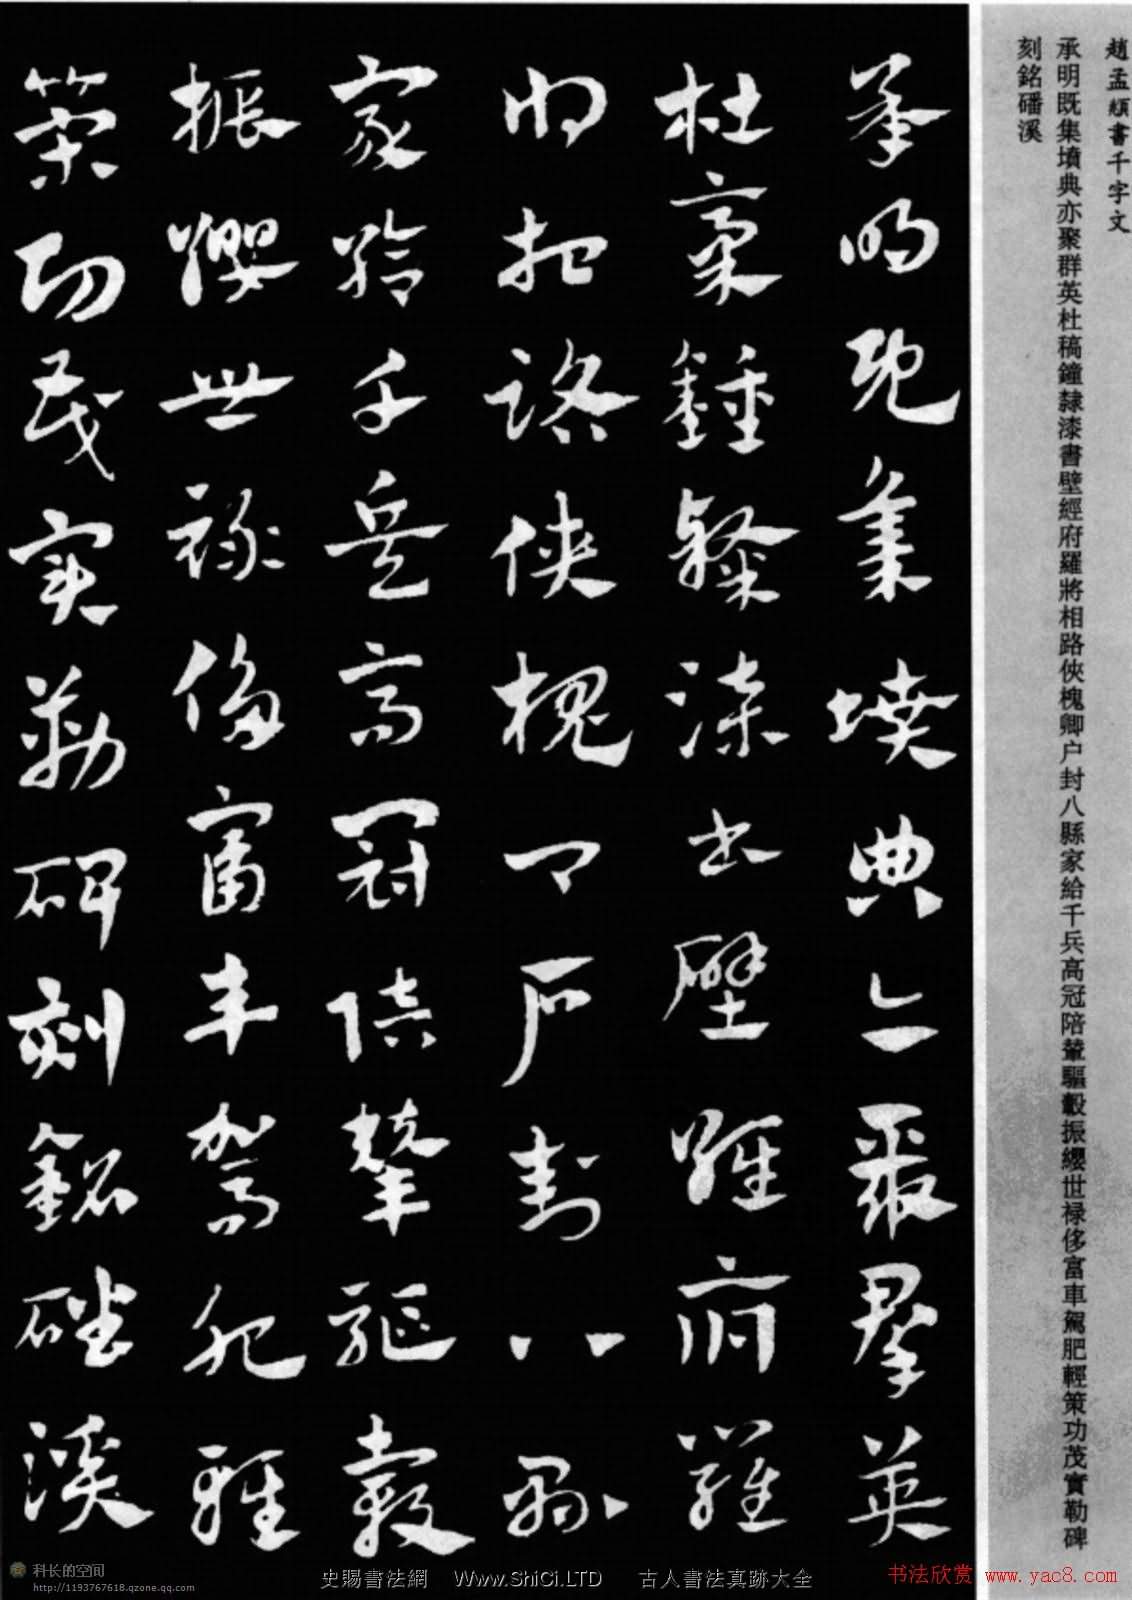 趙孟頫書法章草千字文(附釋文)圖片17P（共17張圖片）